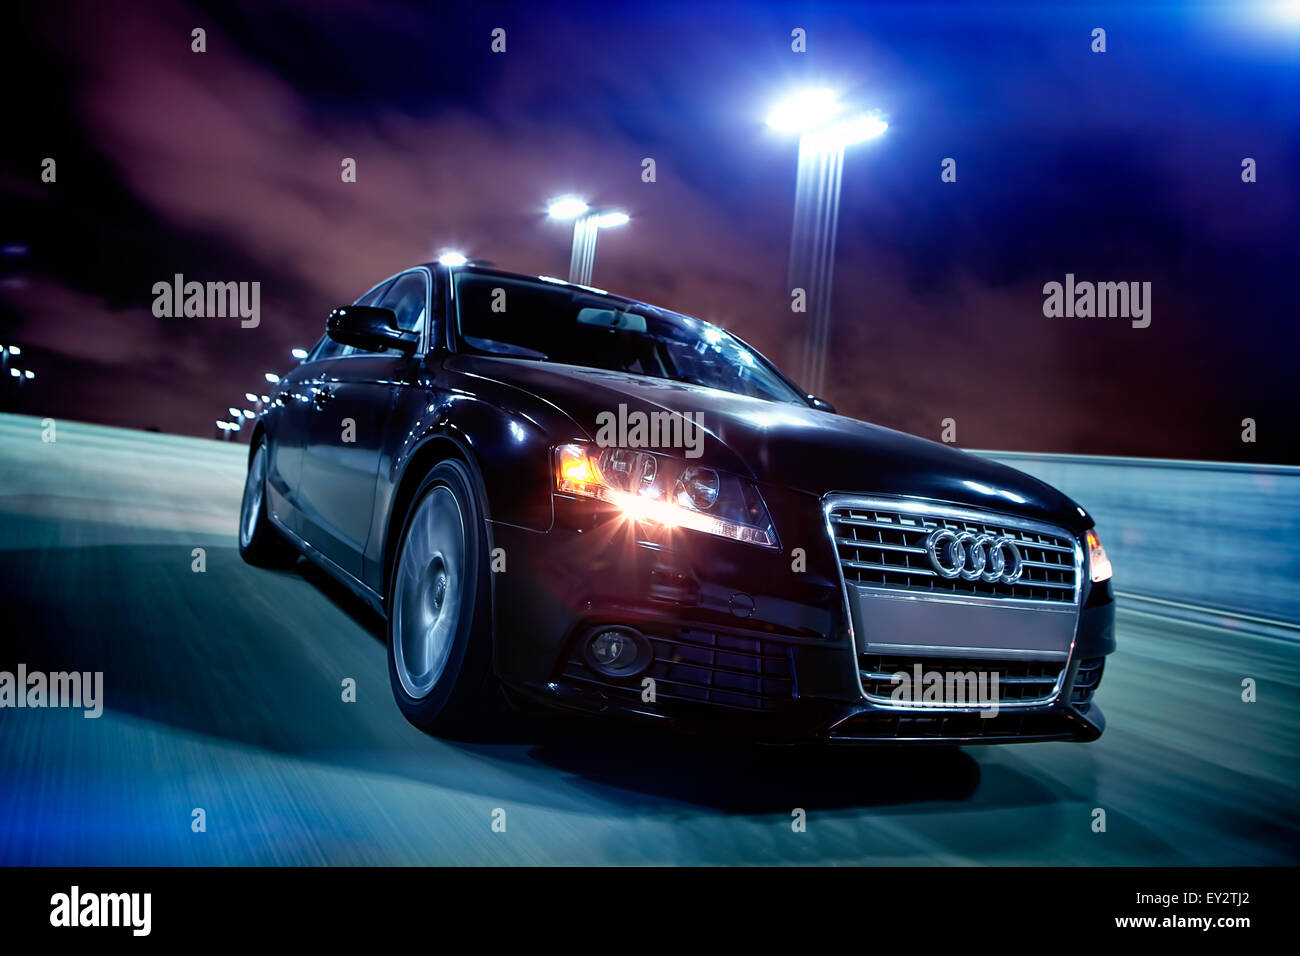 Audi a4 immagini e fotografie stock ad alta risoluzione - Pagina 2 - Alamy